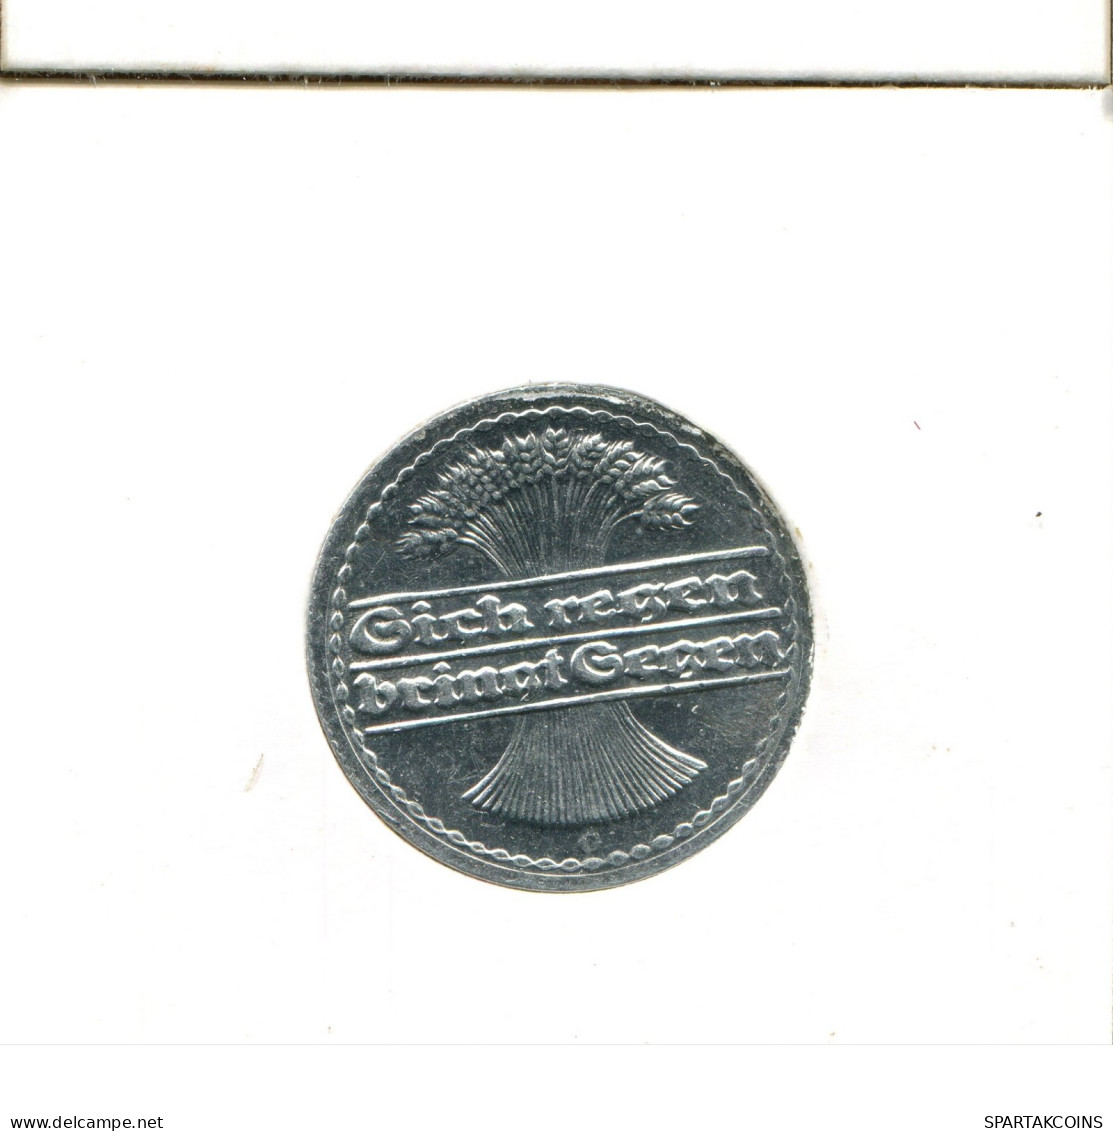 50 PFENNIG 1922 G GERMANY Coin #AW470.U.A - 50 Rentenpfennig & 50 Reichspfennig